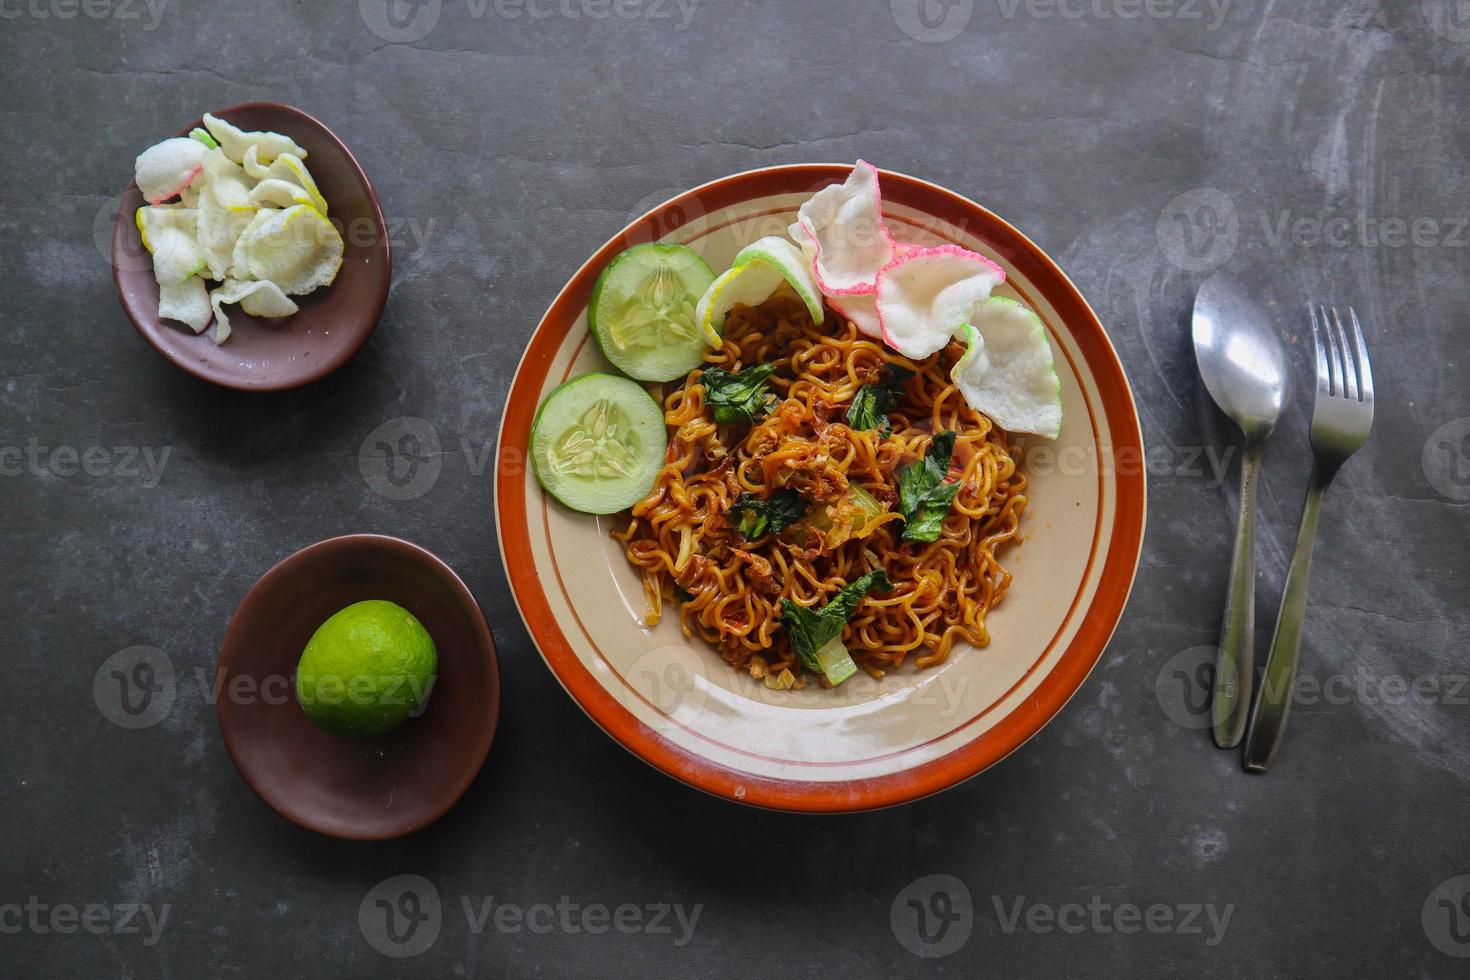 mie tek tek o fritte spaghetto fatto con uovo tagliatelle con pollo, cavolo, mostarda verdi, Polpette, strapazzate uova. indonesiano cibo foto